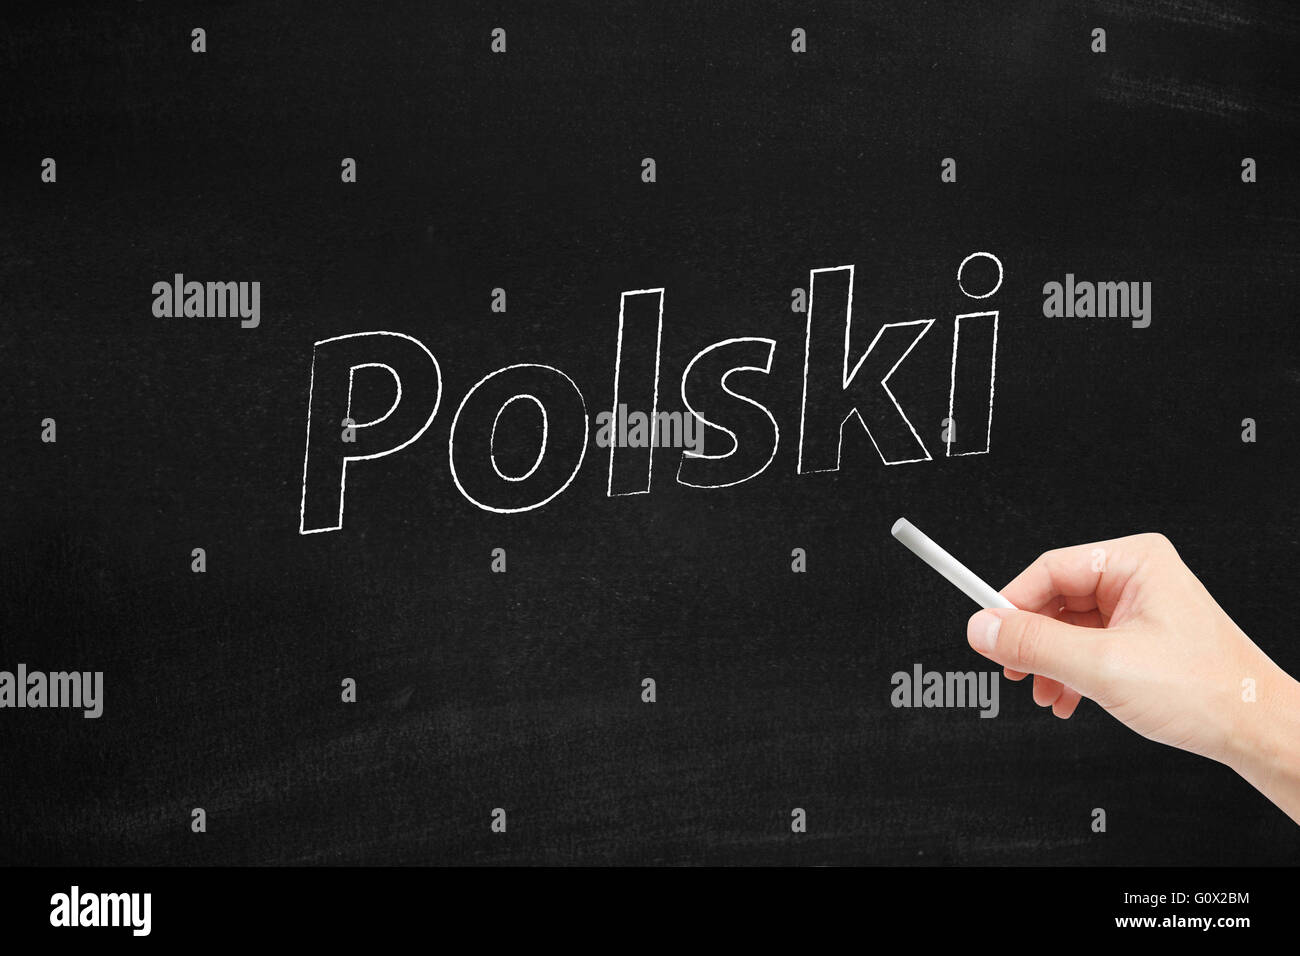 The language of Poland, Polski, written on a blackboard Stock Photo